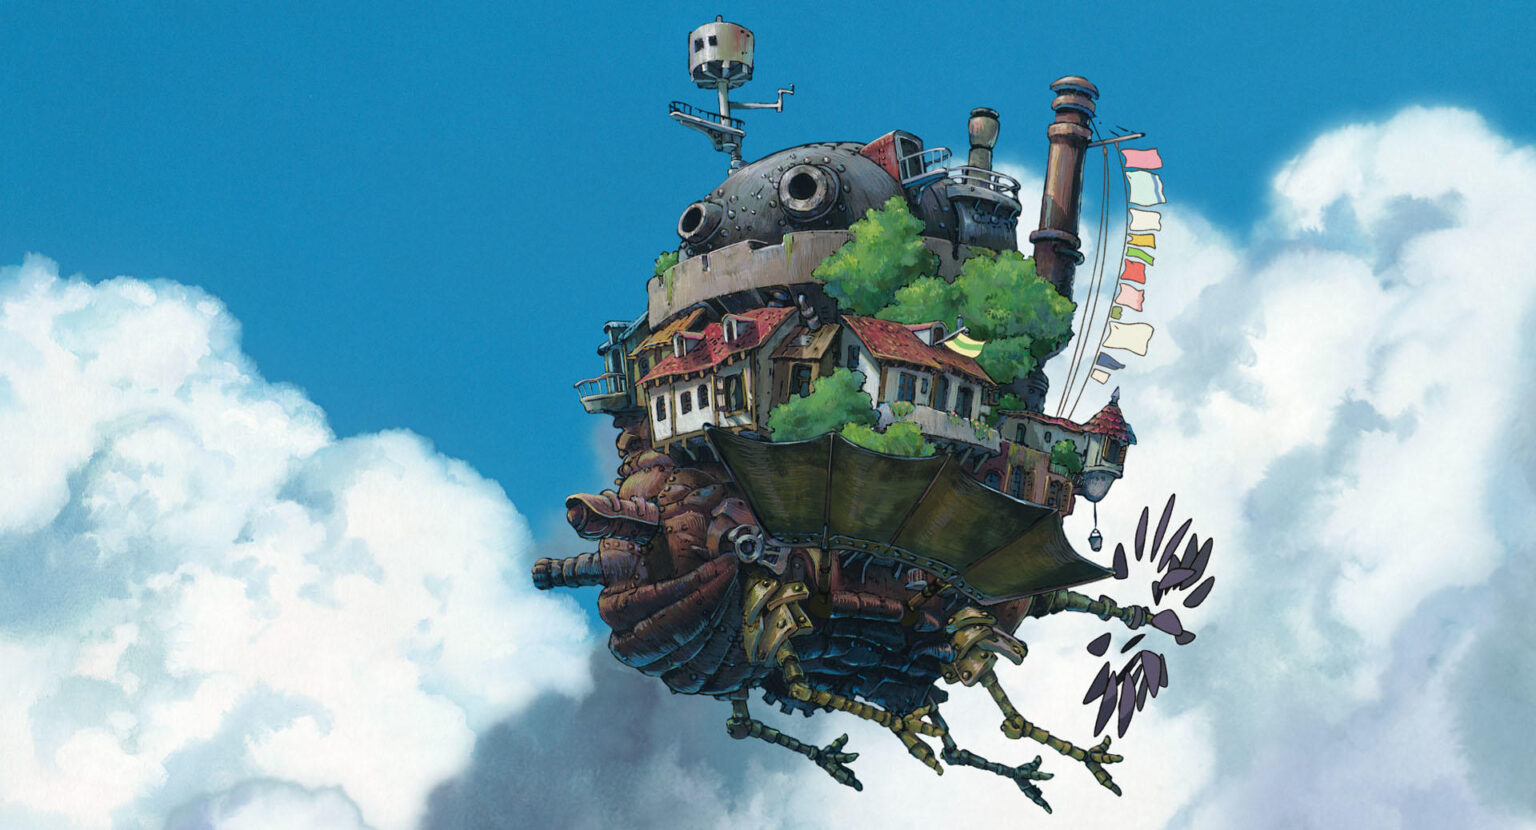 GKIDS Presents Studio Ghibli Fest 2022 “Howl’s moving castle” JapanUp